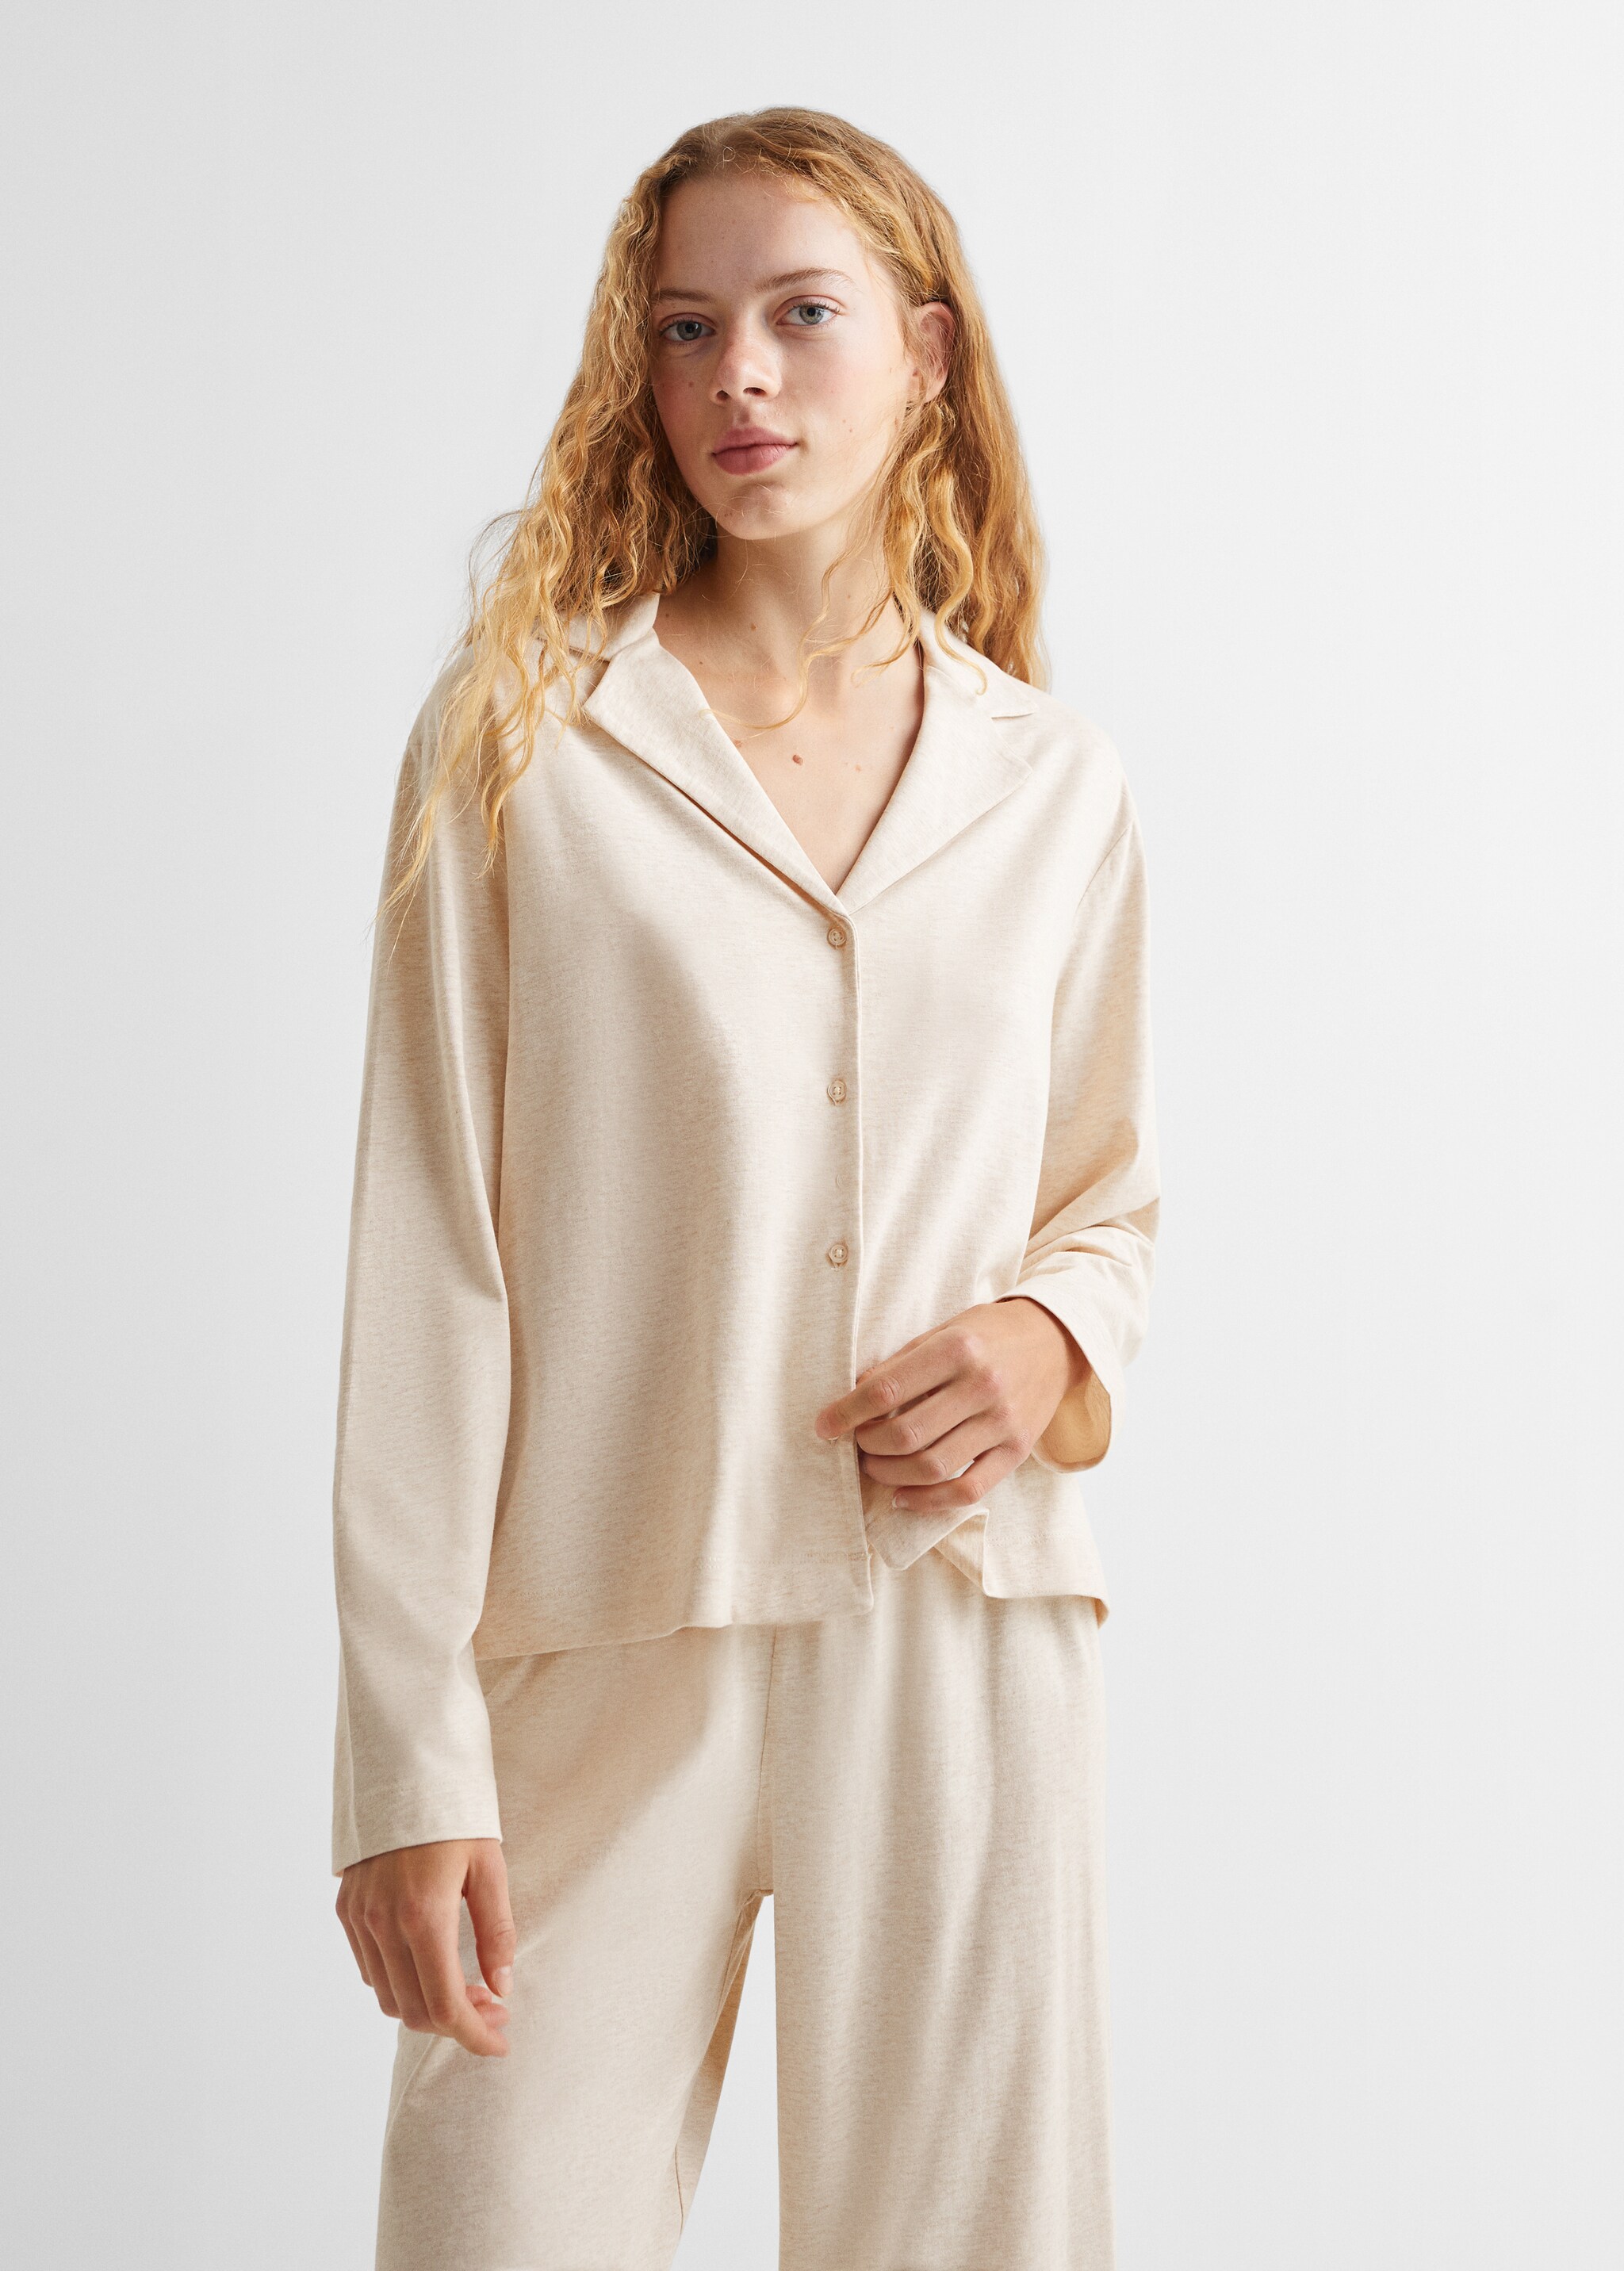 Cotton long pyjamas - Medium plane